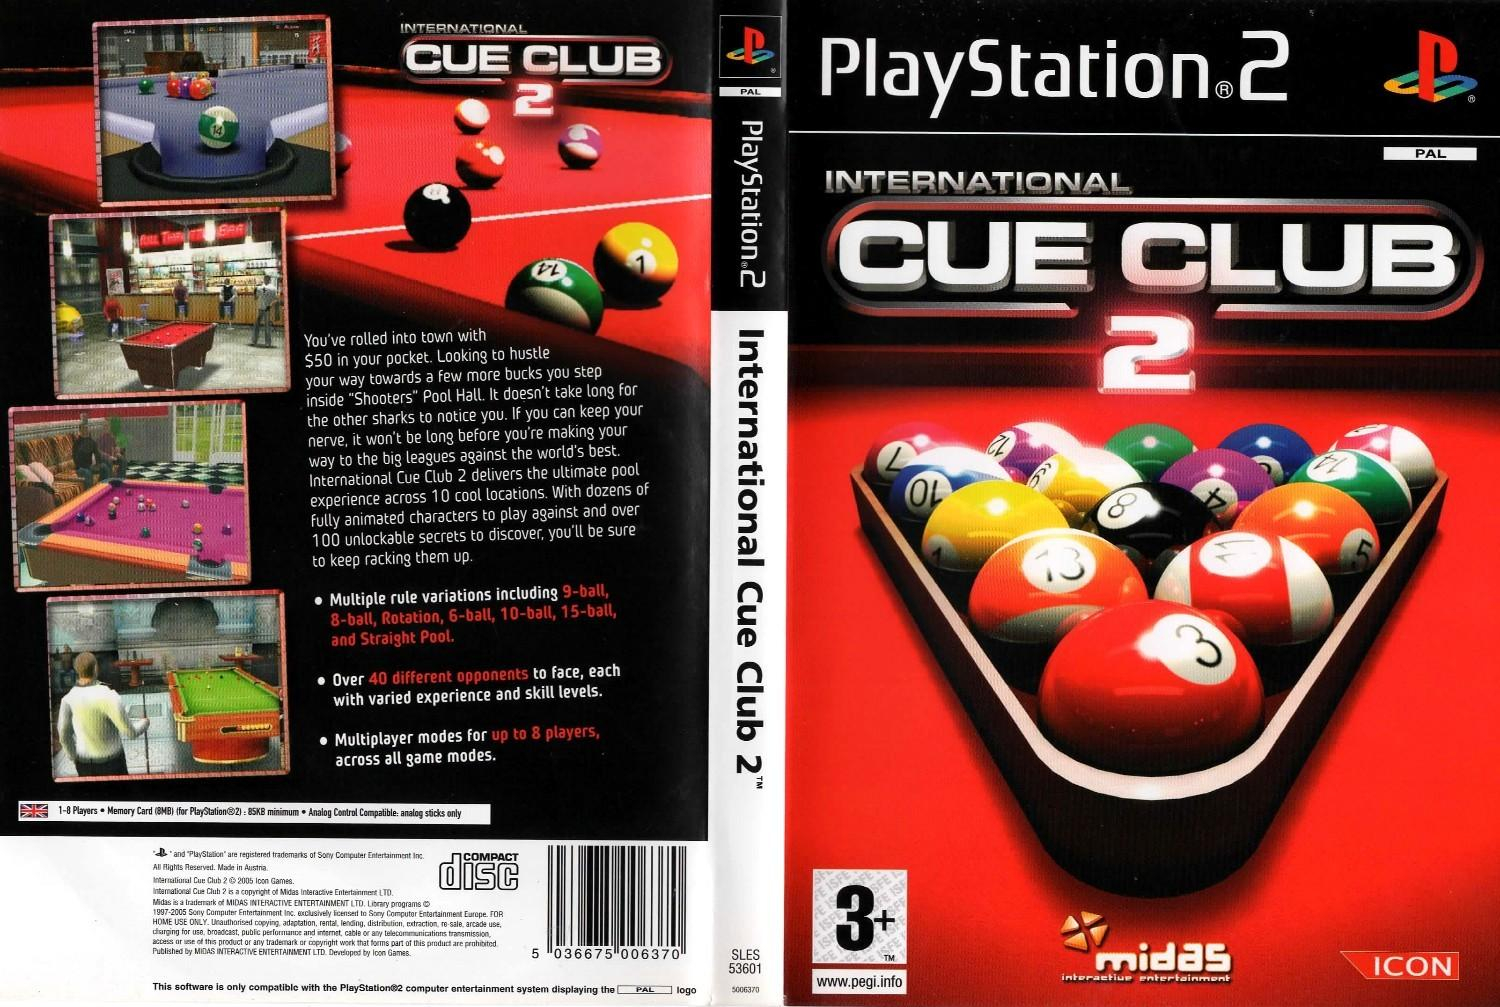 Players club 2. Cue Club 2. Cue игра. Cue Club 2002. International cue Club.